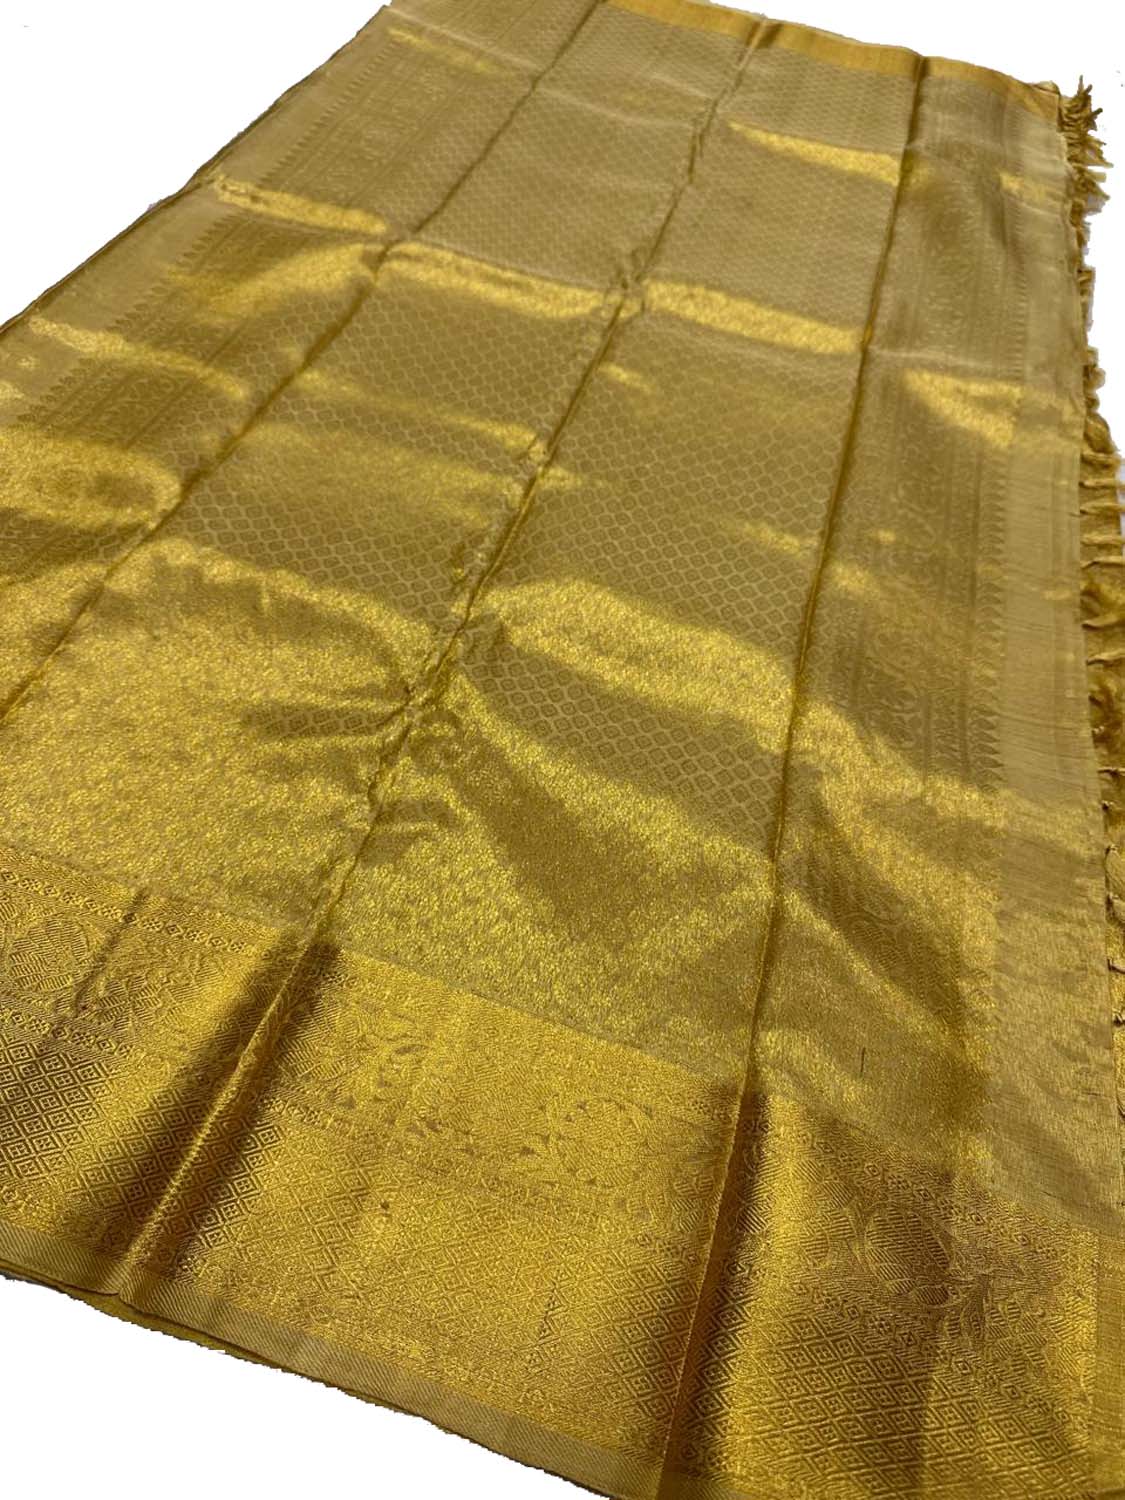 Exquisite Golden Handloom Kanjeevaram Silk Saree - Luxurion World